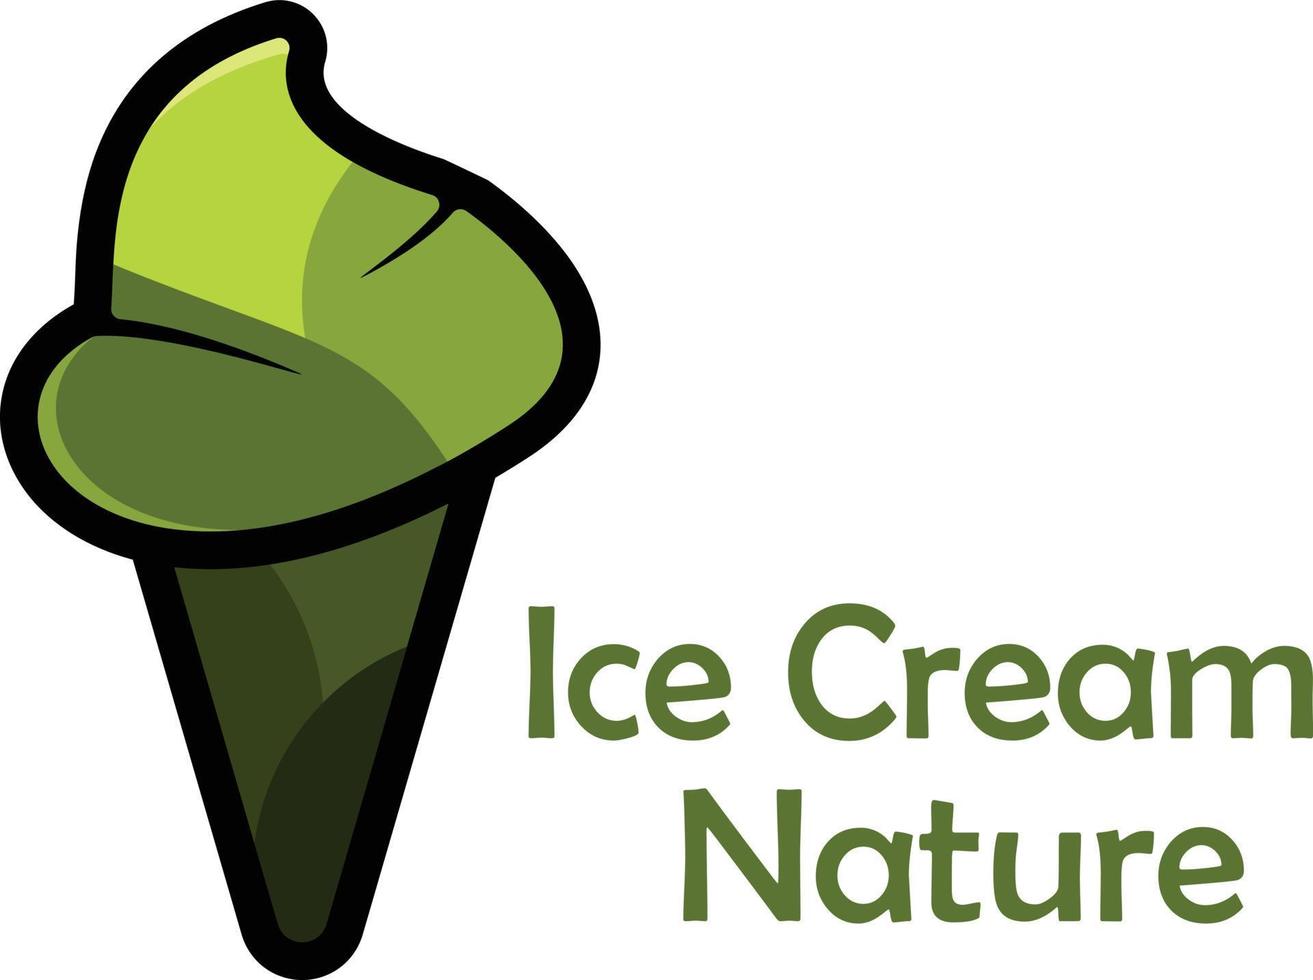 hielo crema logo naturaleza. vector ilustración